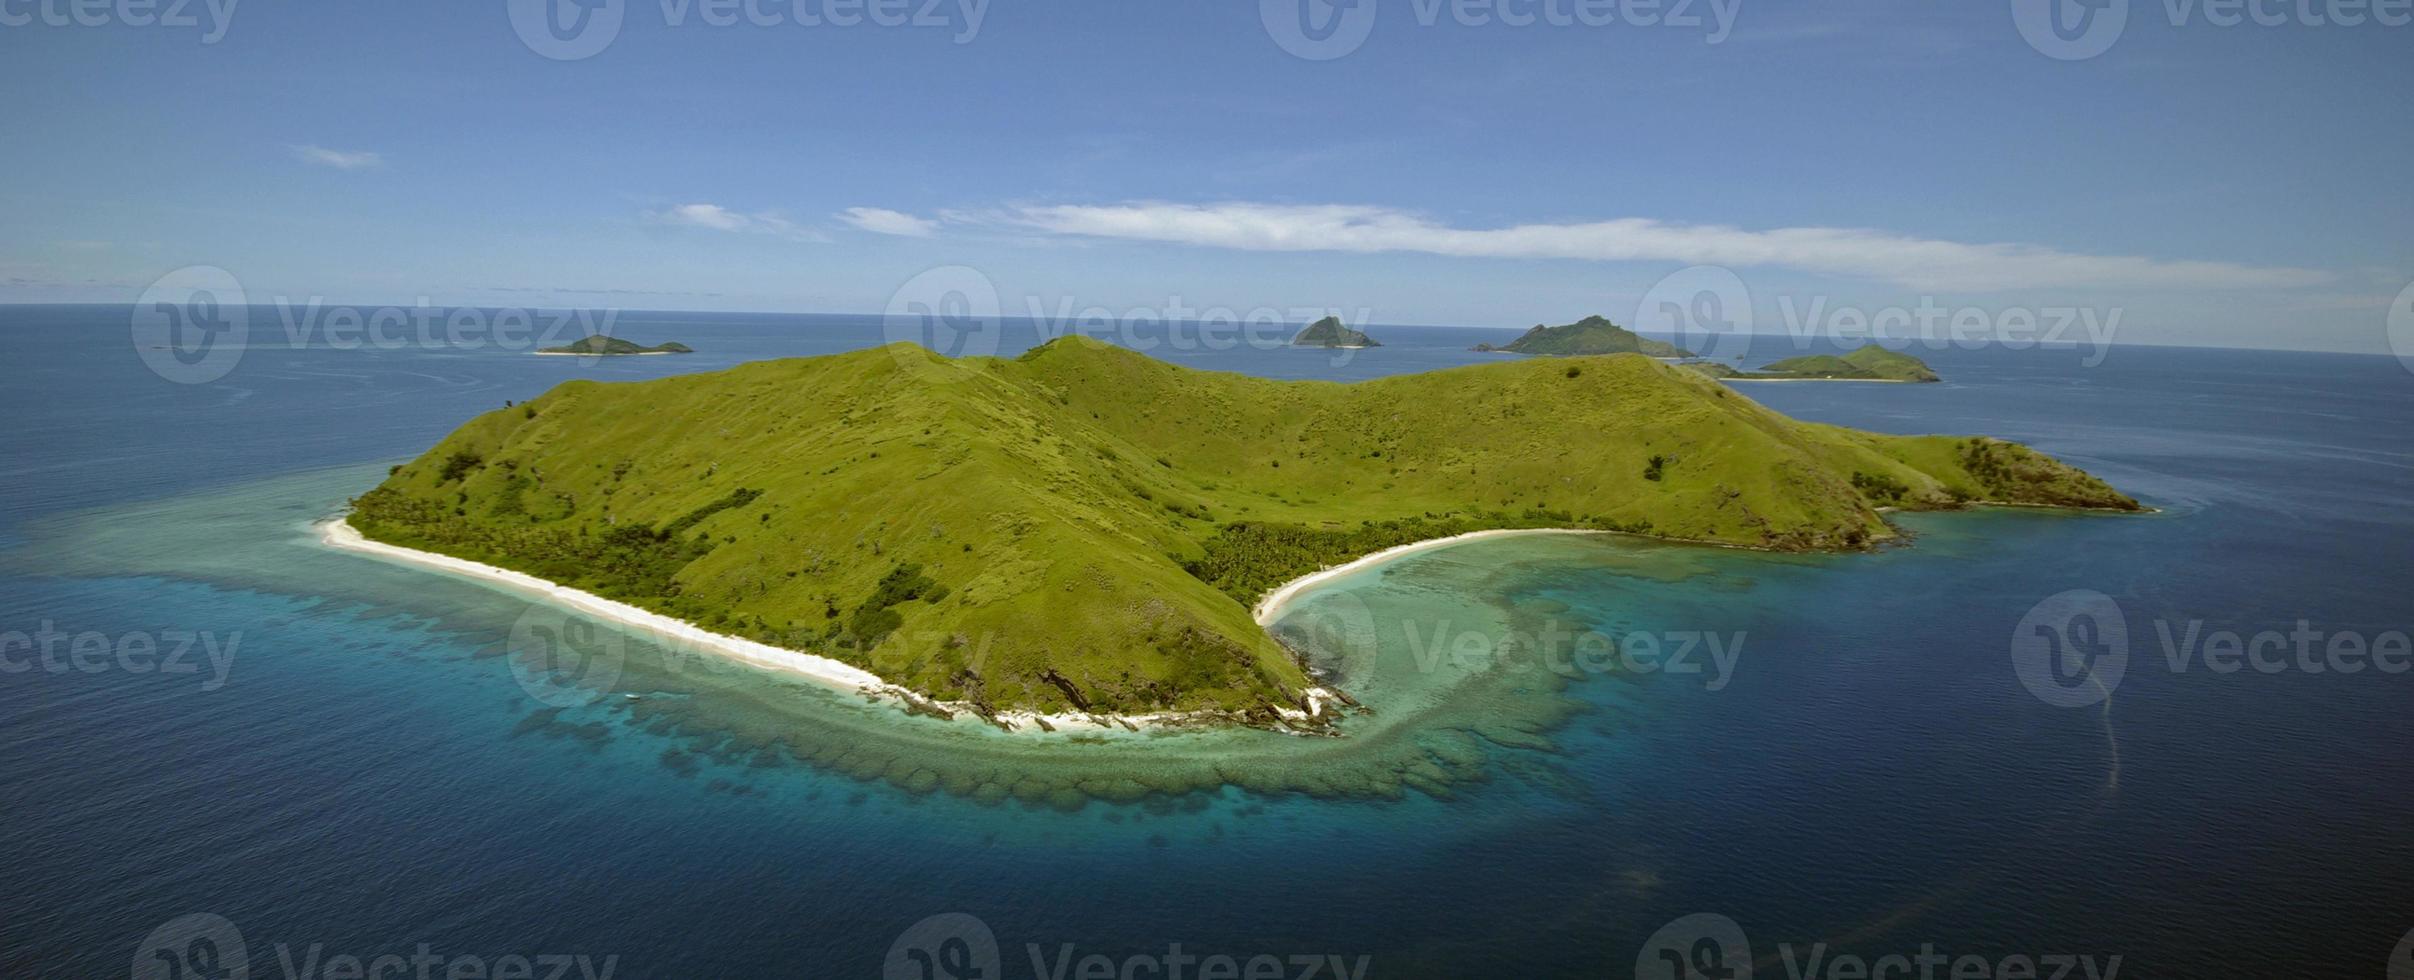 vue aérienne d'une île tropicale photo